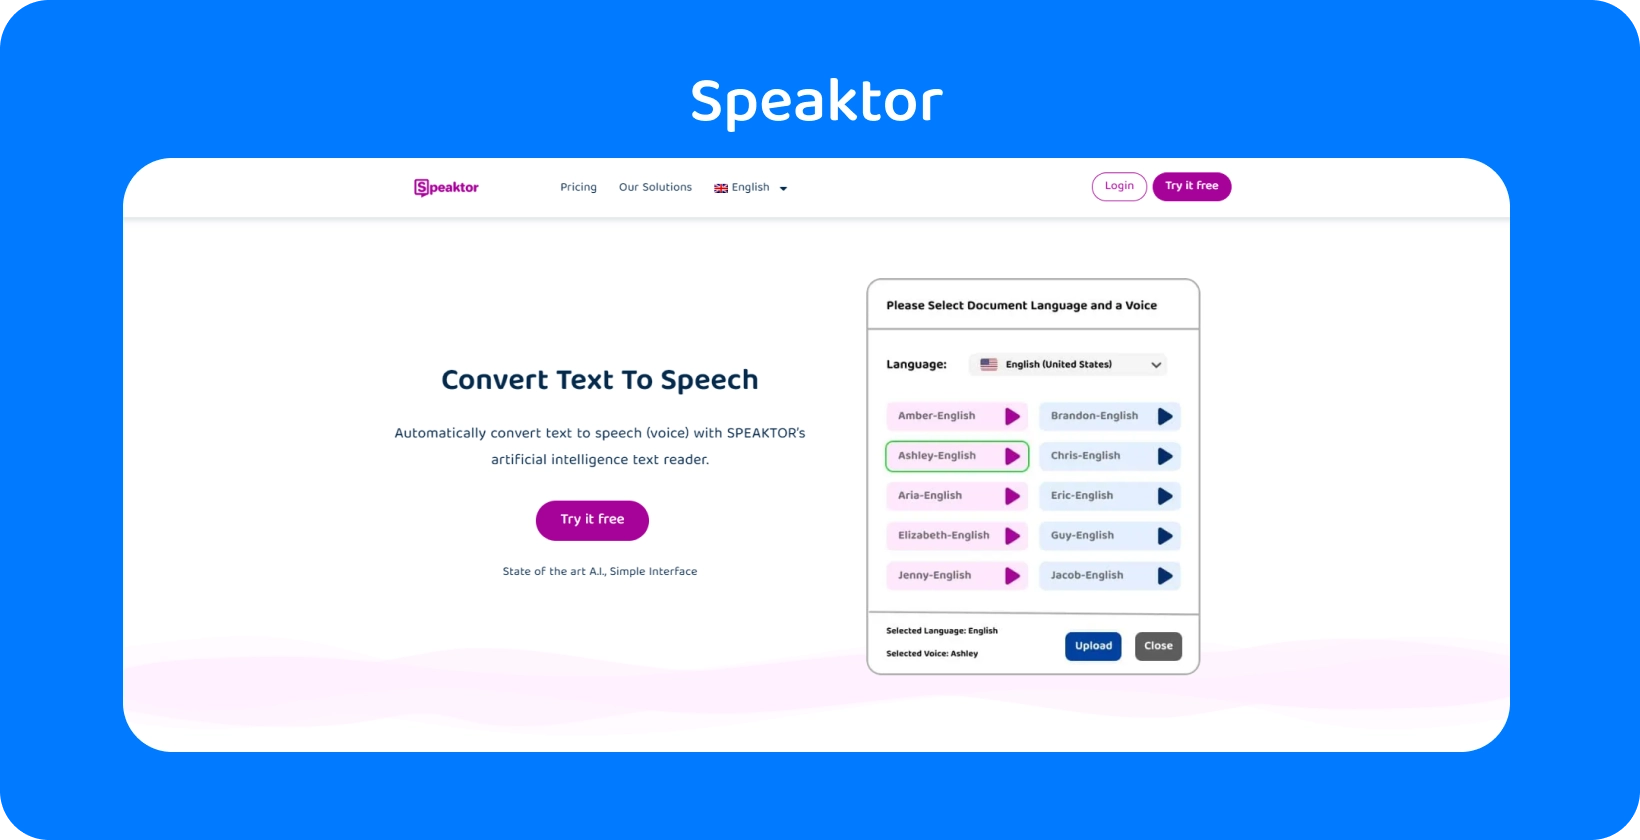 يوفر Speaktor واجهة سهلة الاستخدام لتحويل النص إلى كلام.